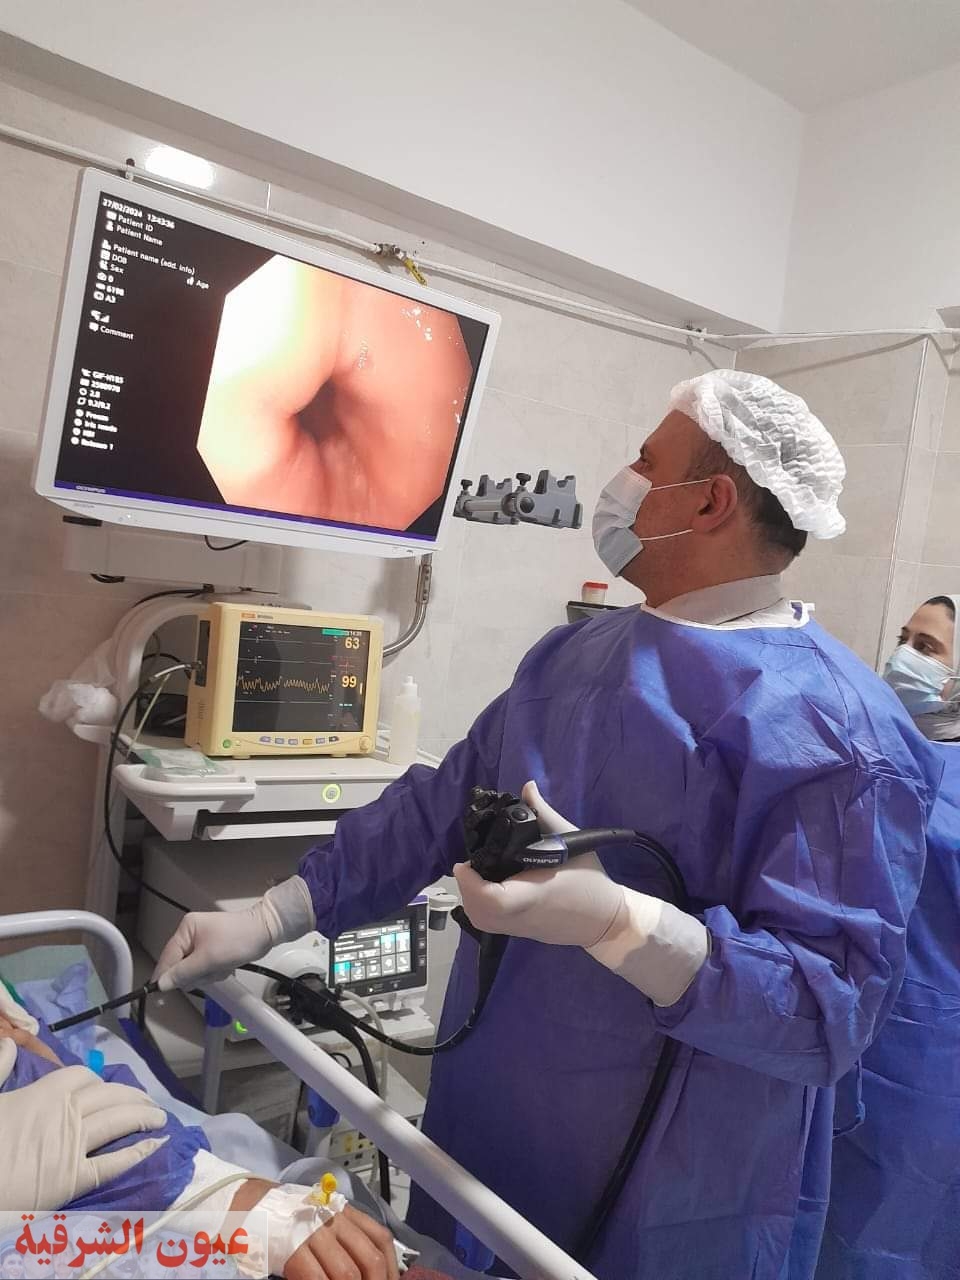 صحة الشرقية: إجراء عمليات مناظير بجهاز أرجون بلازما الفريد بمستشفى منيا القمح المركزي